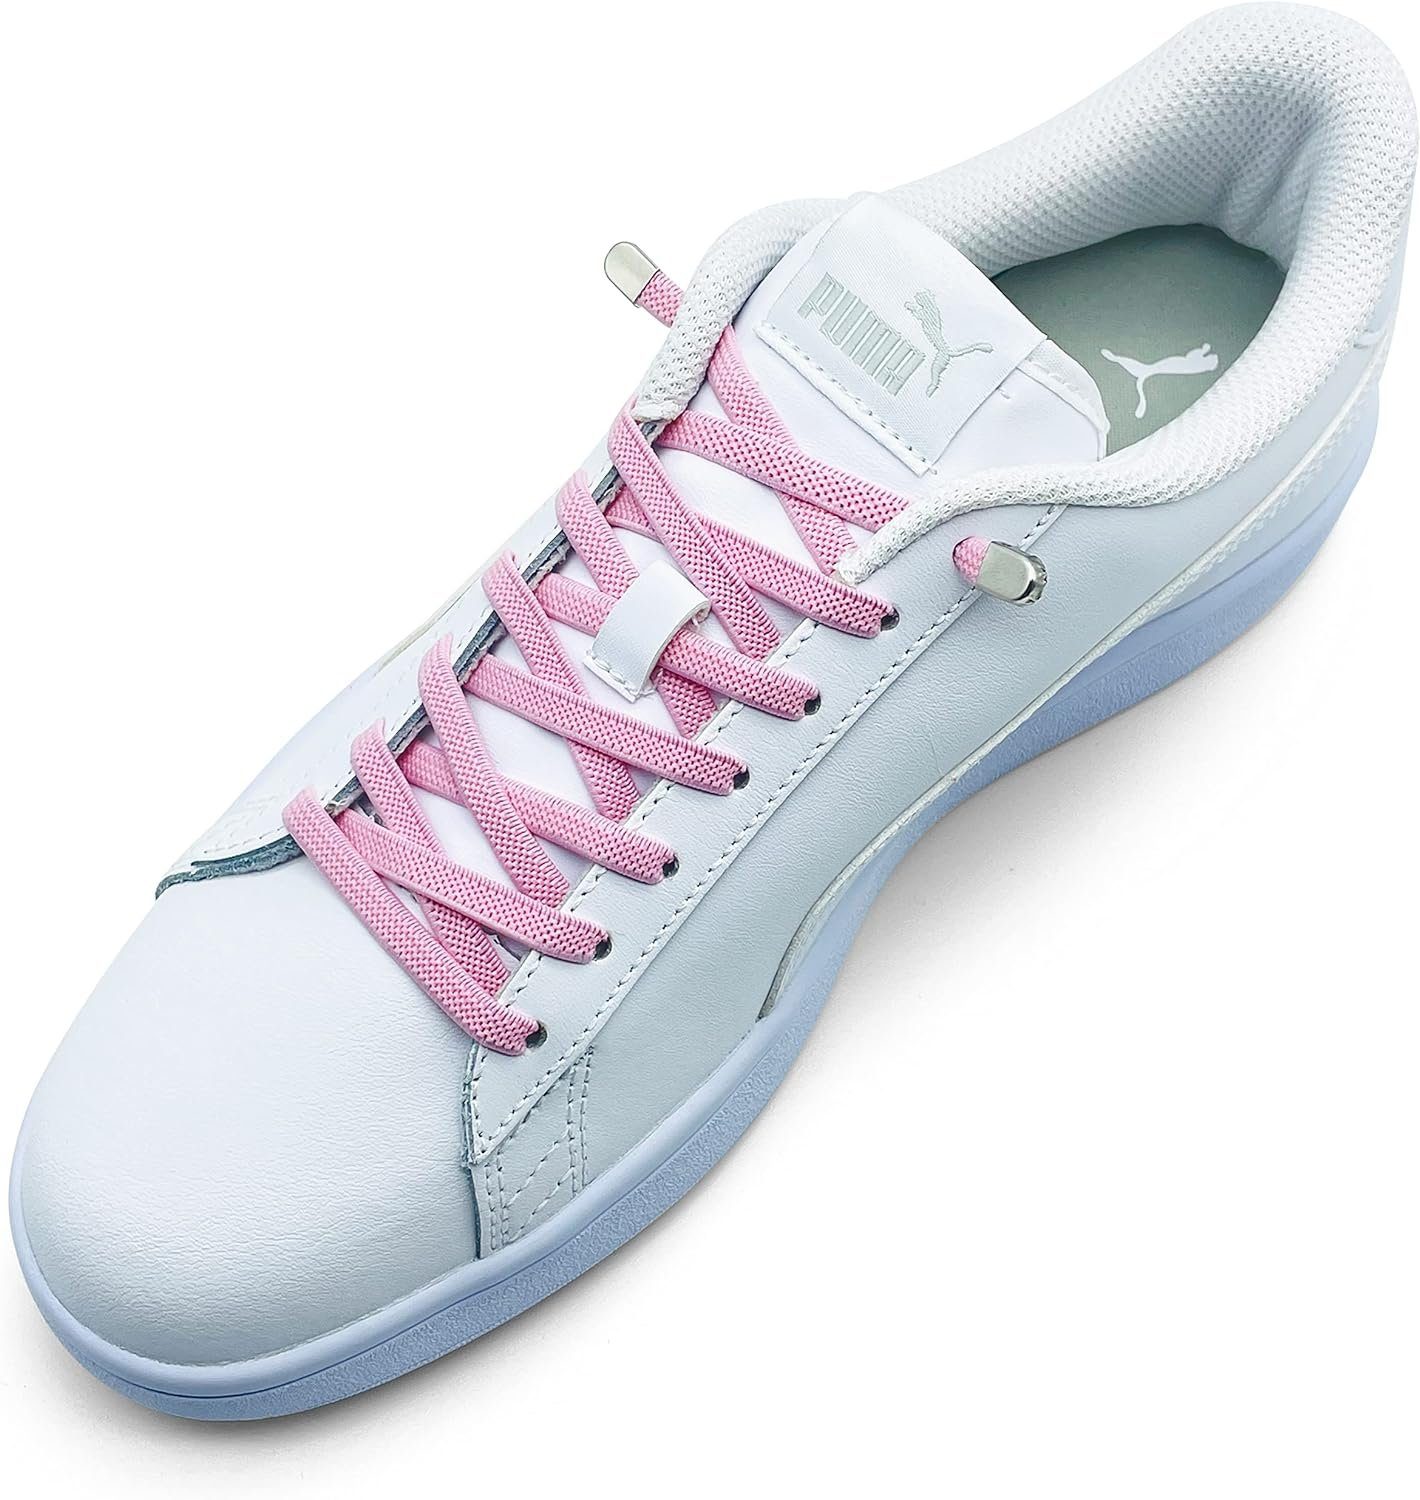 ELANOX Schnürsenkel 4 Stück für 2 Paar Schuhe elastische Schnürsenkel mit Clips, inkl. Enden (Clips) - 8 St. in silber light pink | Schnürsenkel